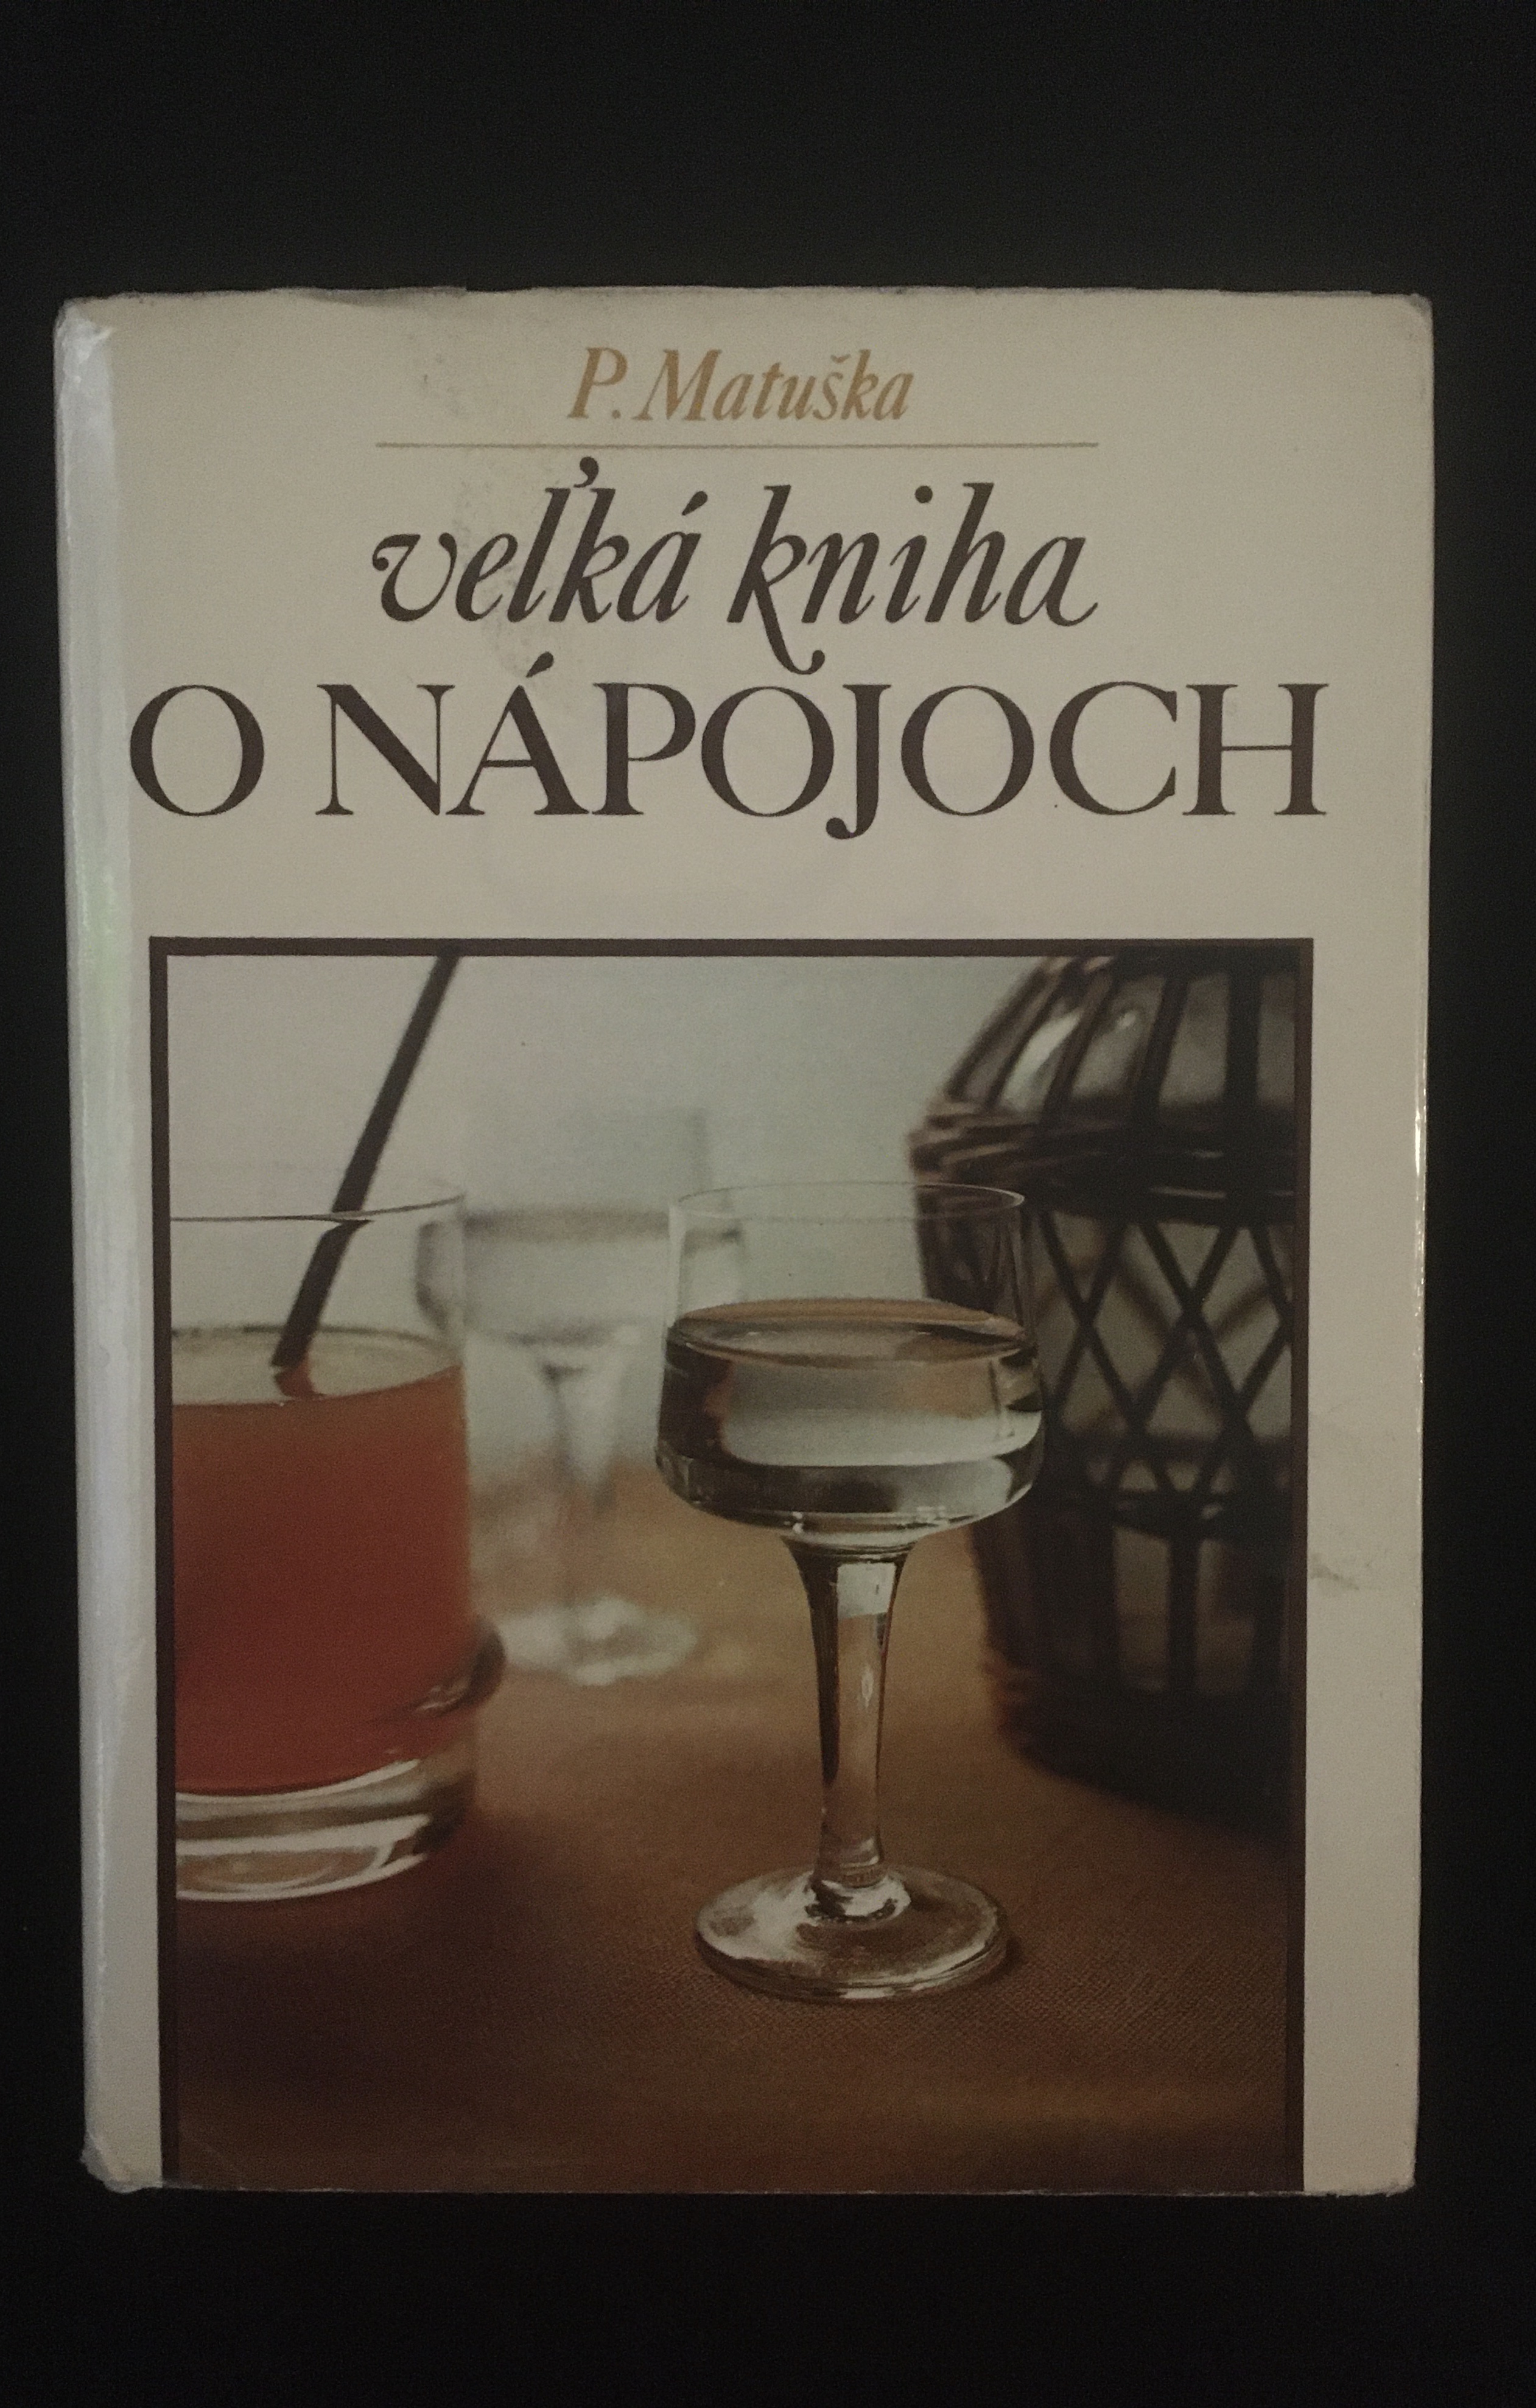 P.Matuška -Veľká kniha o nápojoch